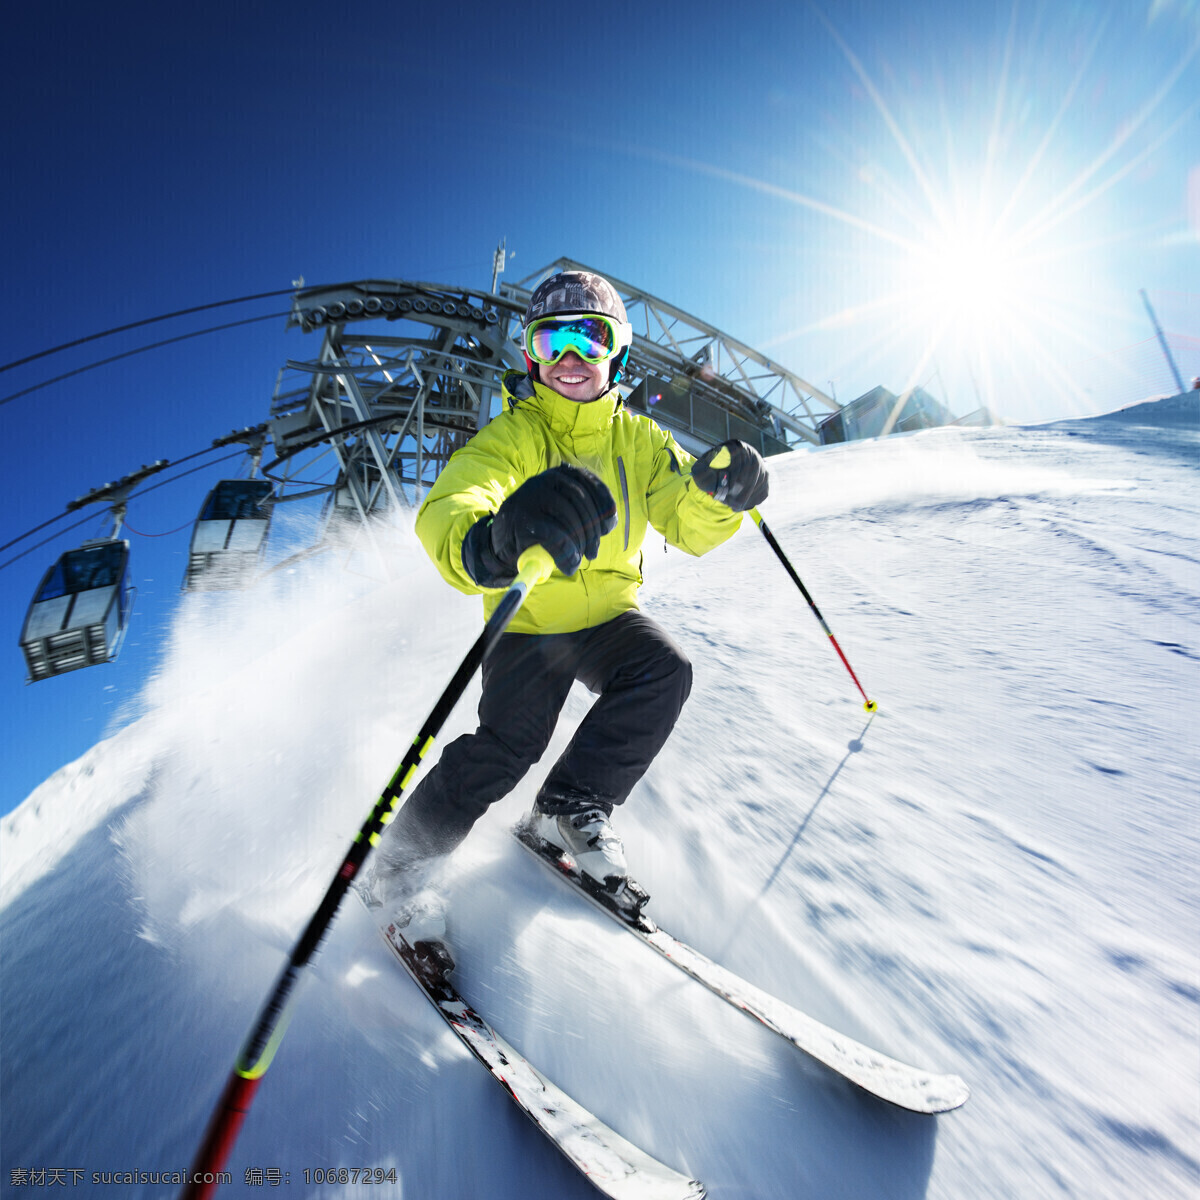 雪花 滑雪 人物 机器 缆车 阳光 雪花飞舞 运动 雪地 滑雪板 户外运动 滑雪图片 生活百科